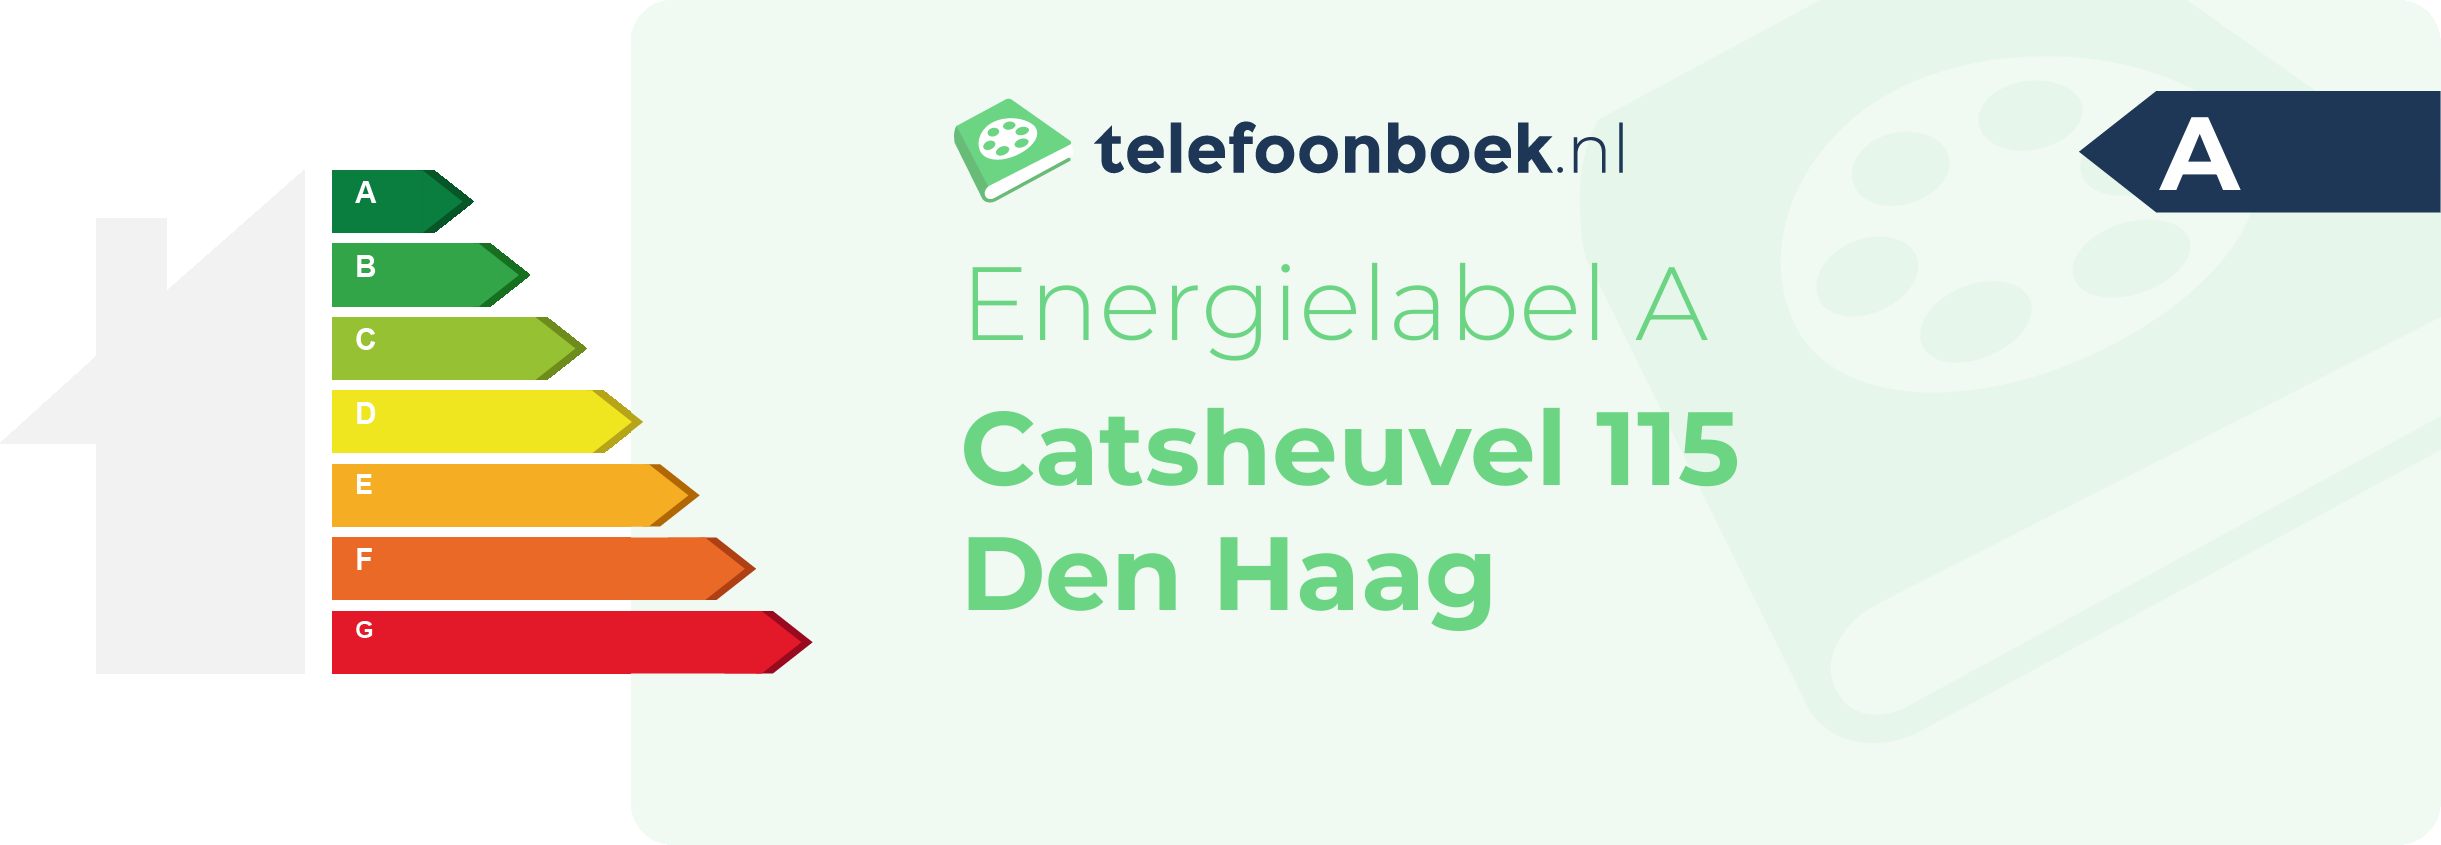 Energielabel Catsheuvel 115 Den Haag